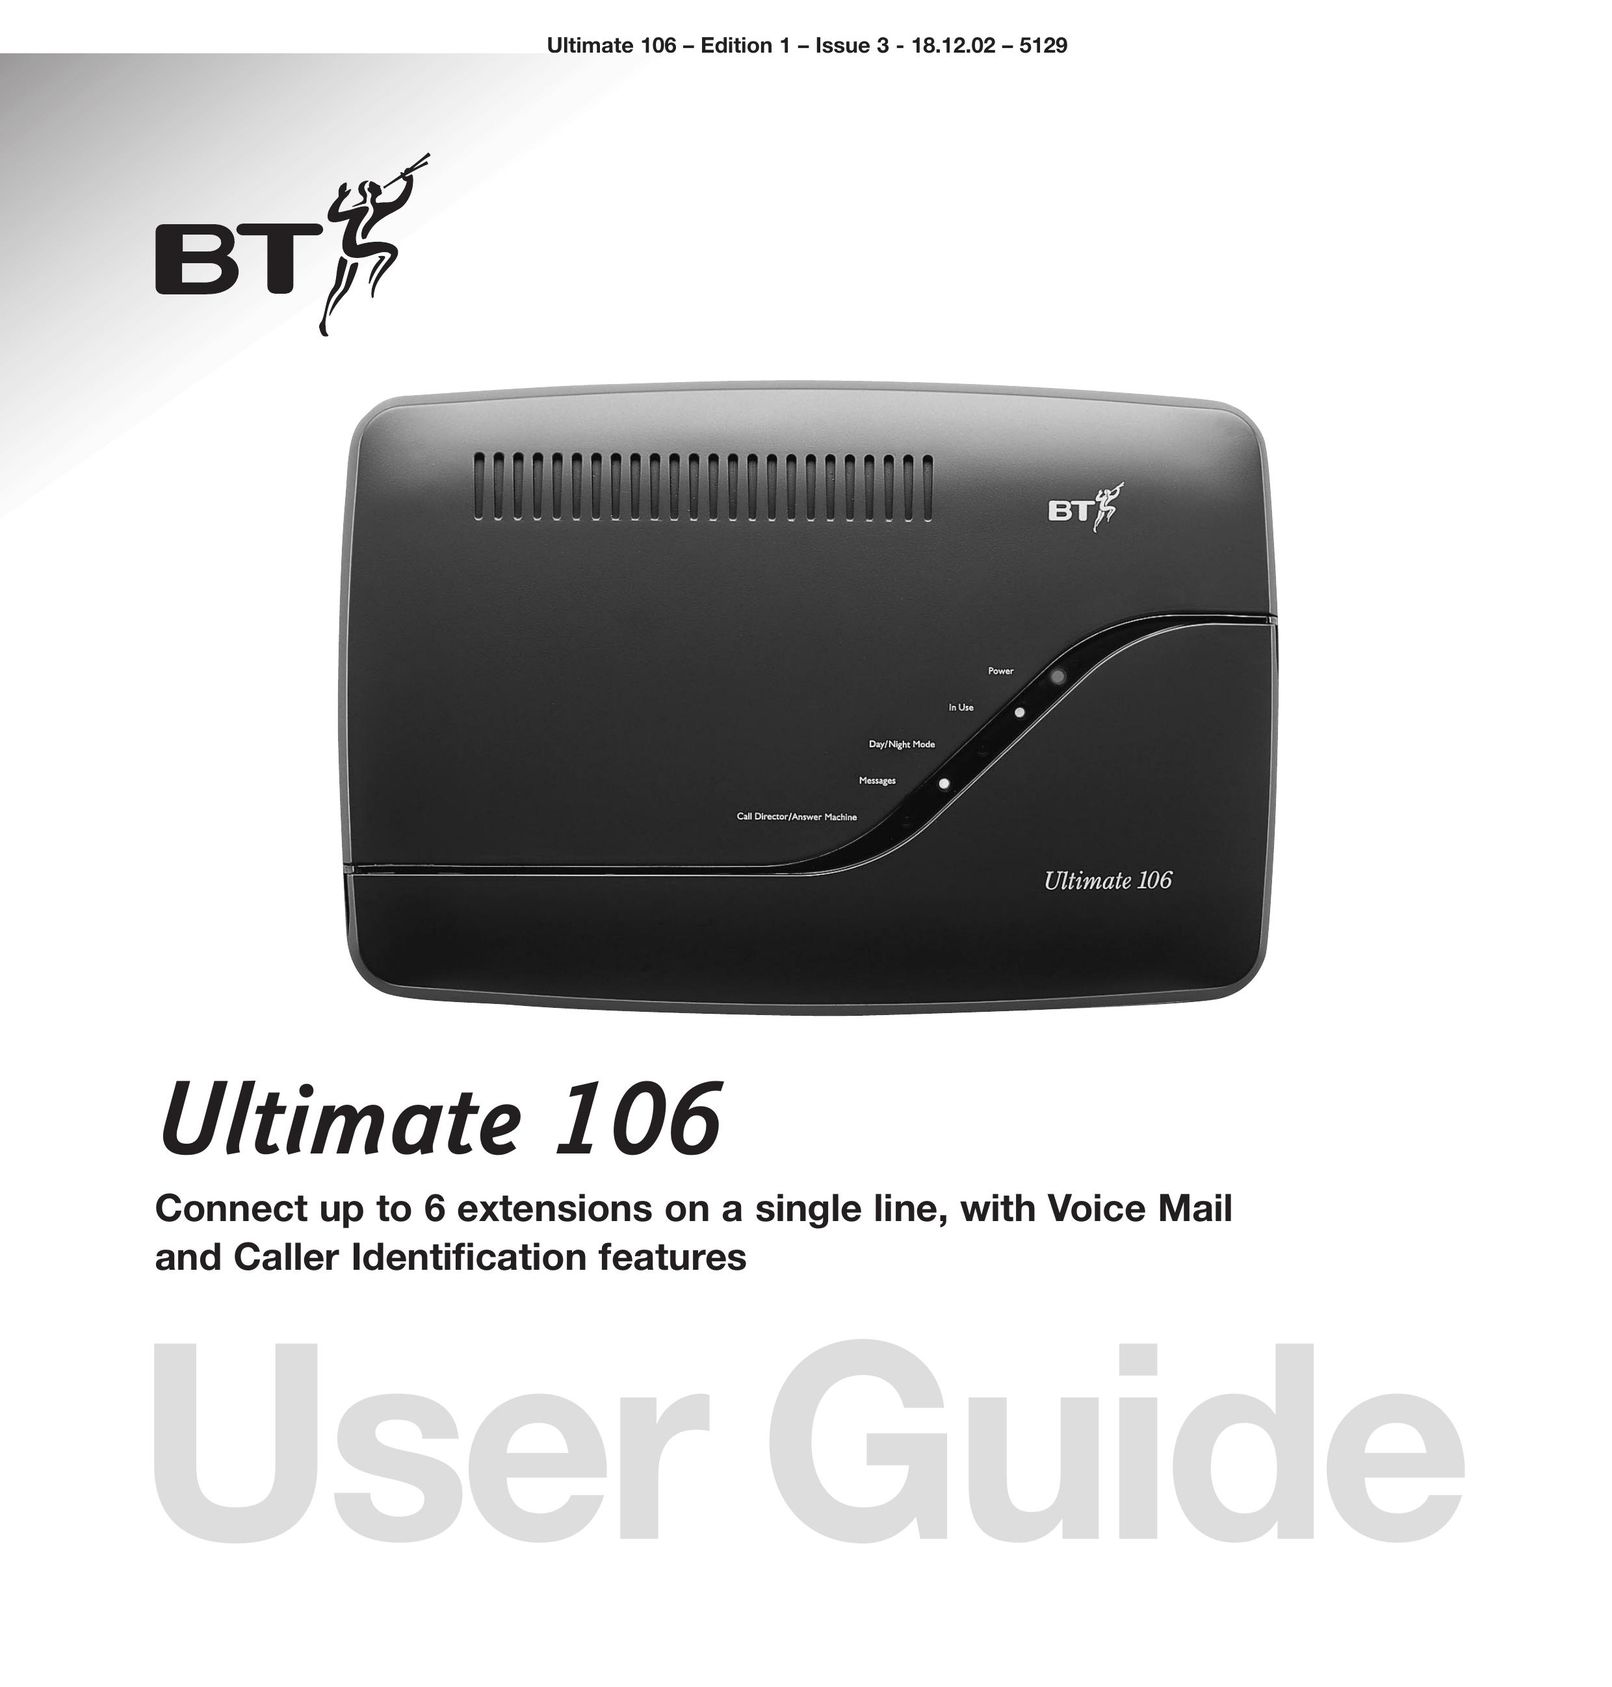 BT 106 Answering Machine User Manual